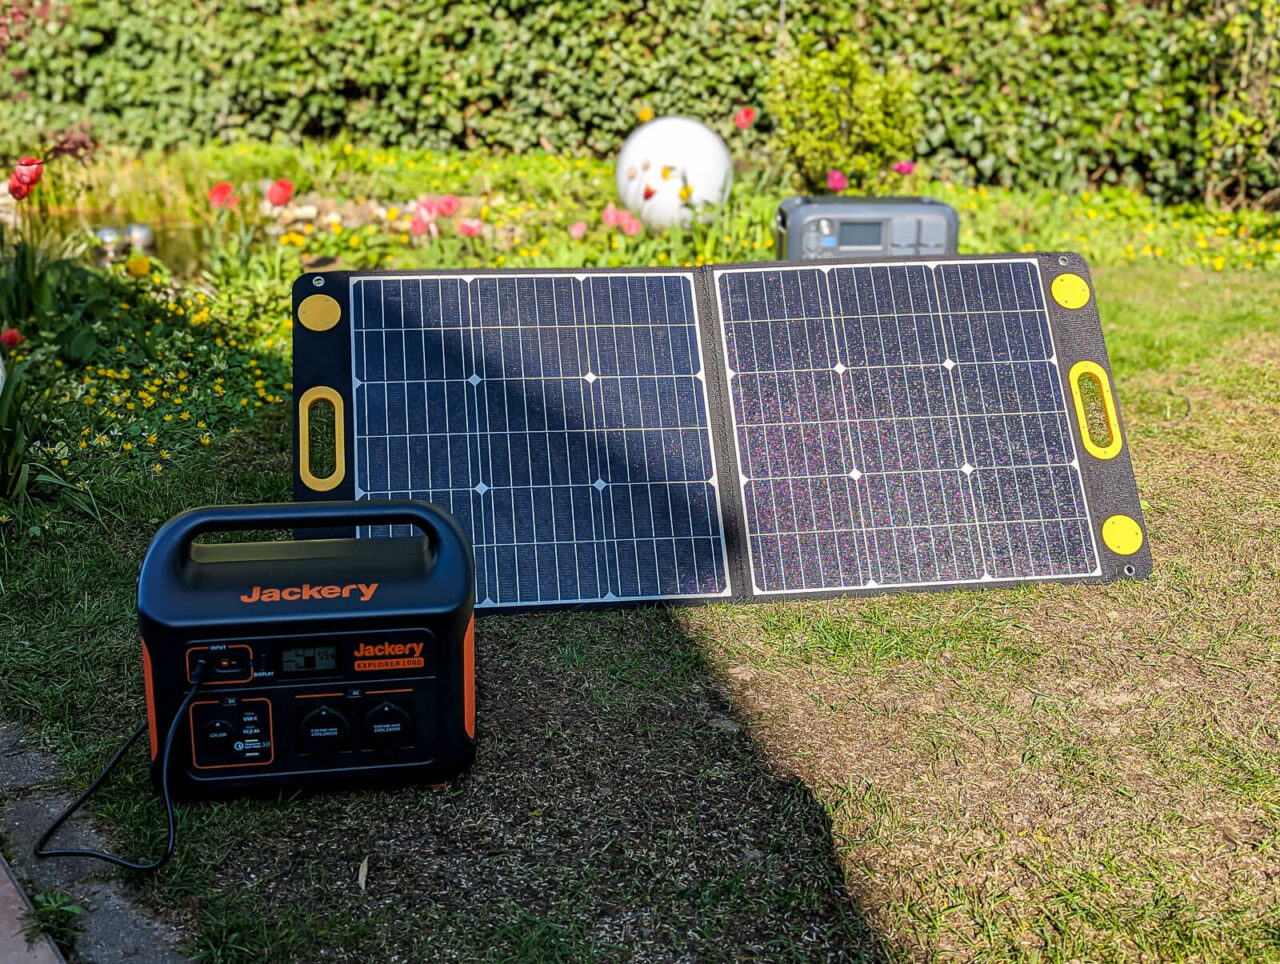 Togo Power 100W Advance Solar Panel - Test, Leistung im Halbschatten, 25% Teilabschattung, mit Solargenerator Jackery Explorer 500